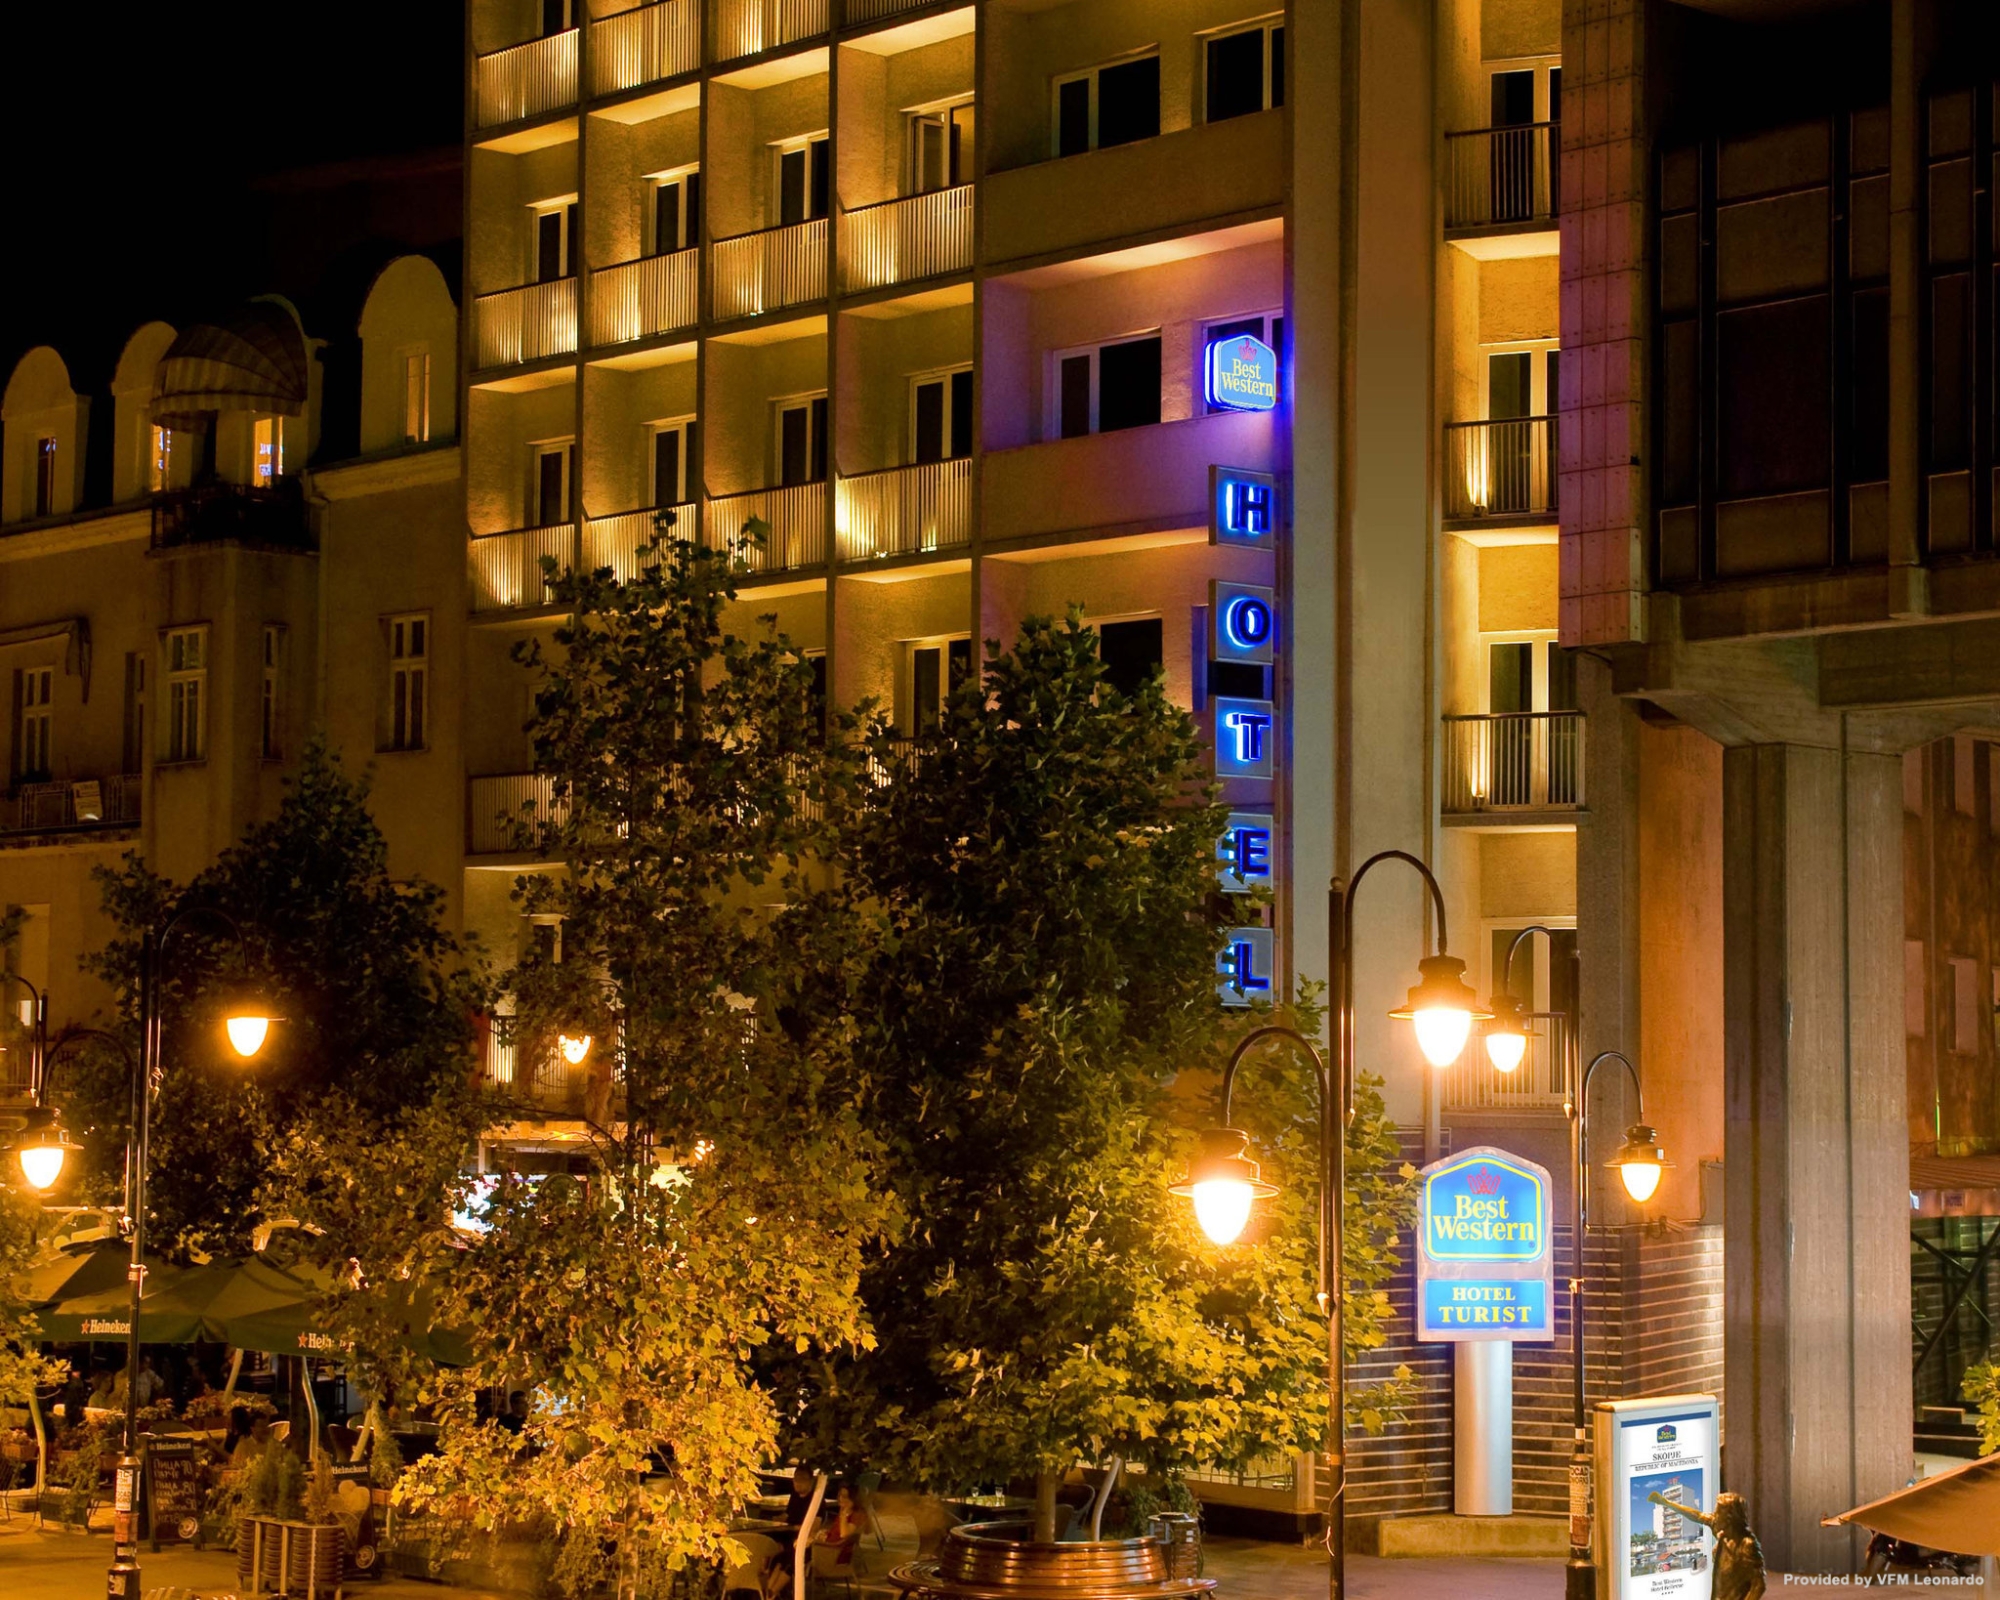 BEST WESTERN TURIST HRS star hotel in Skopje (Grad Skopje)